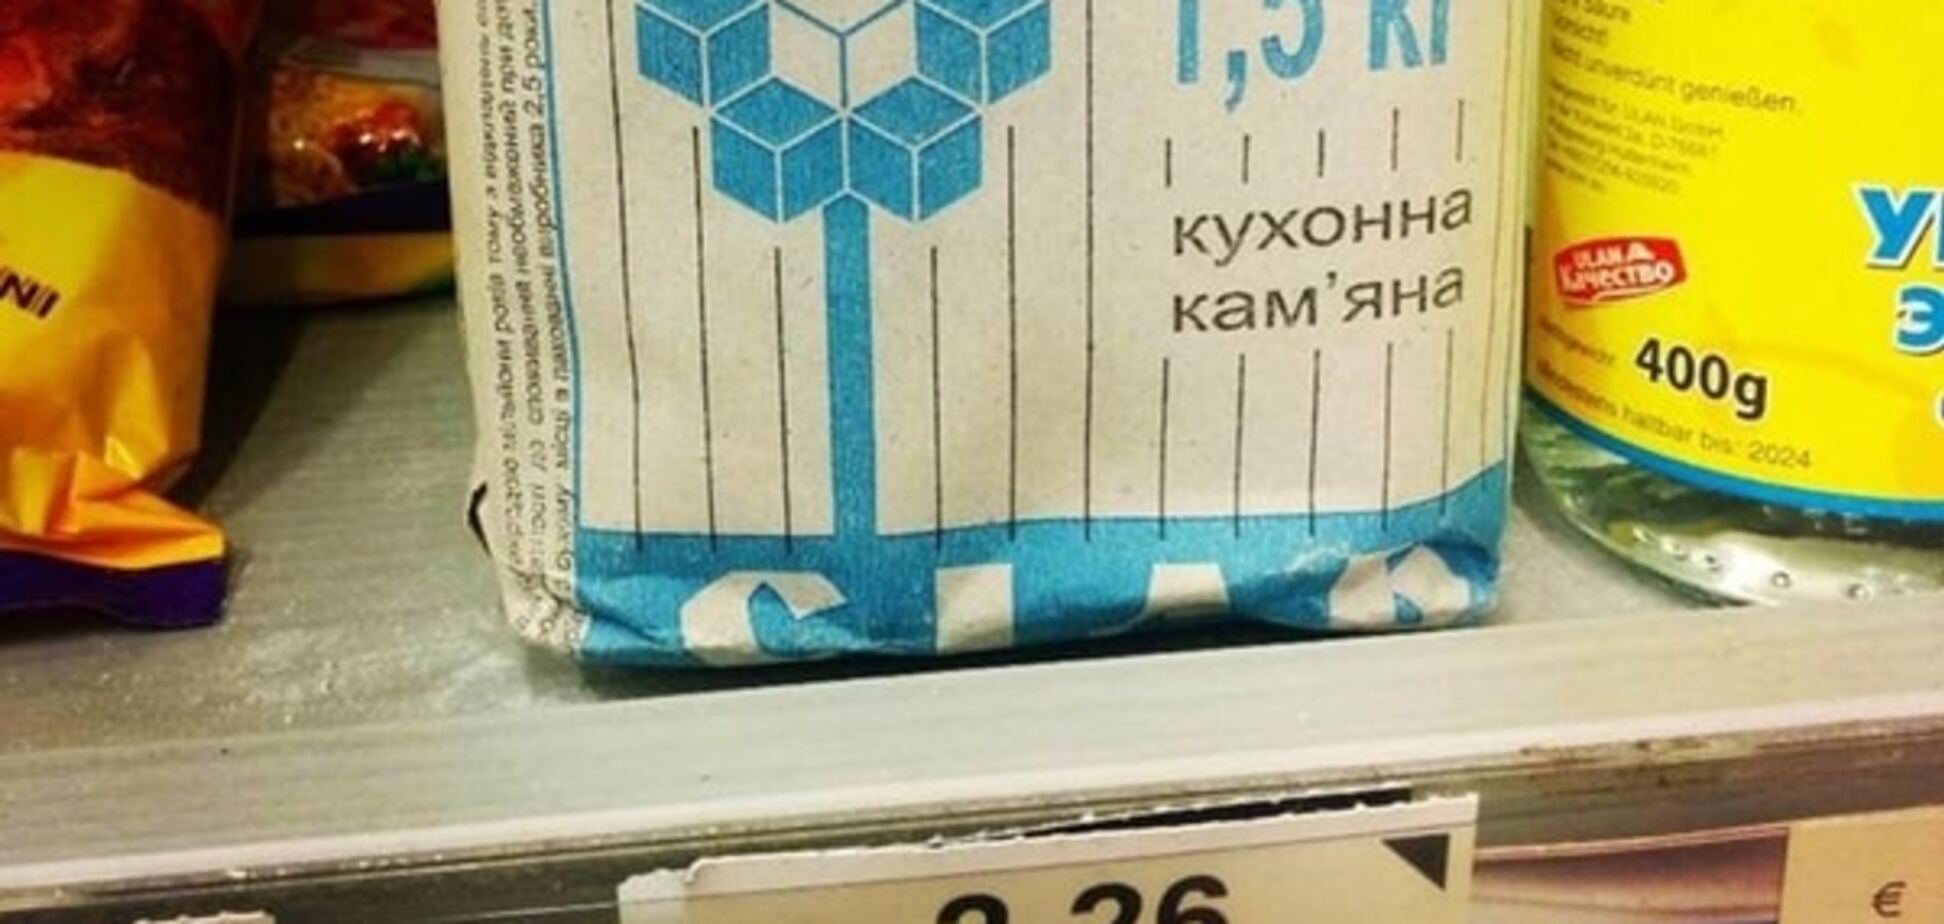 Сіль на Кіпрі, огірки в США: українці підтримали флешмоб вітчизняних товарів. Опубліковані фото